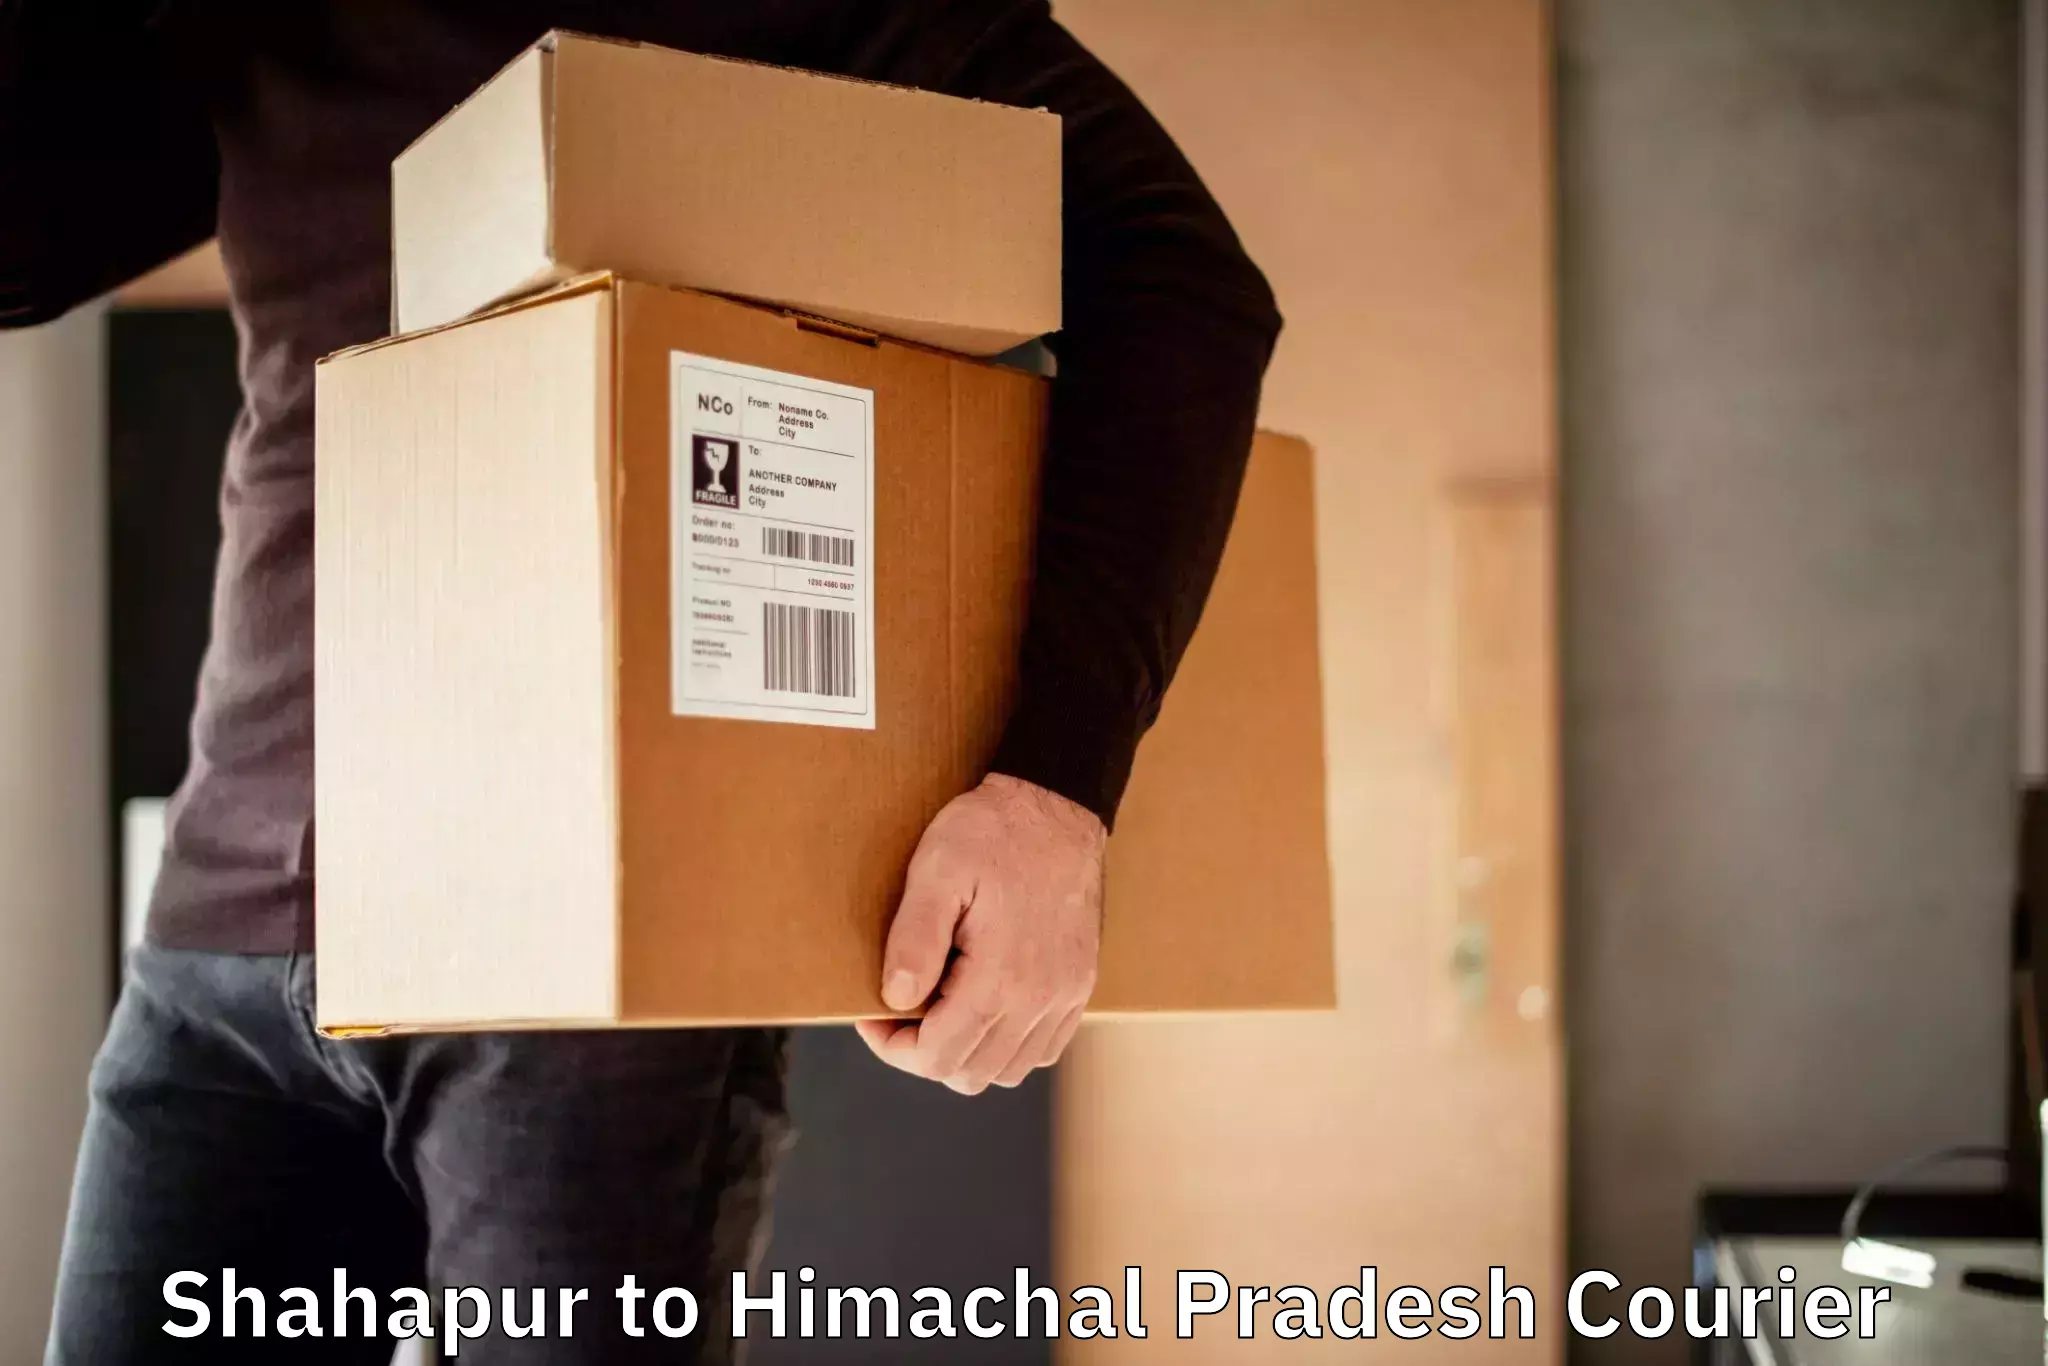 Custom courier rates Shahapur to Joginder Nagar